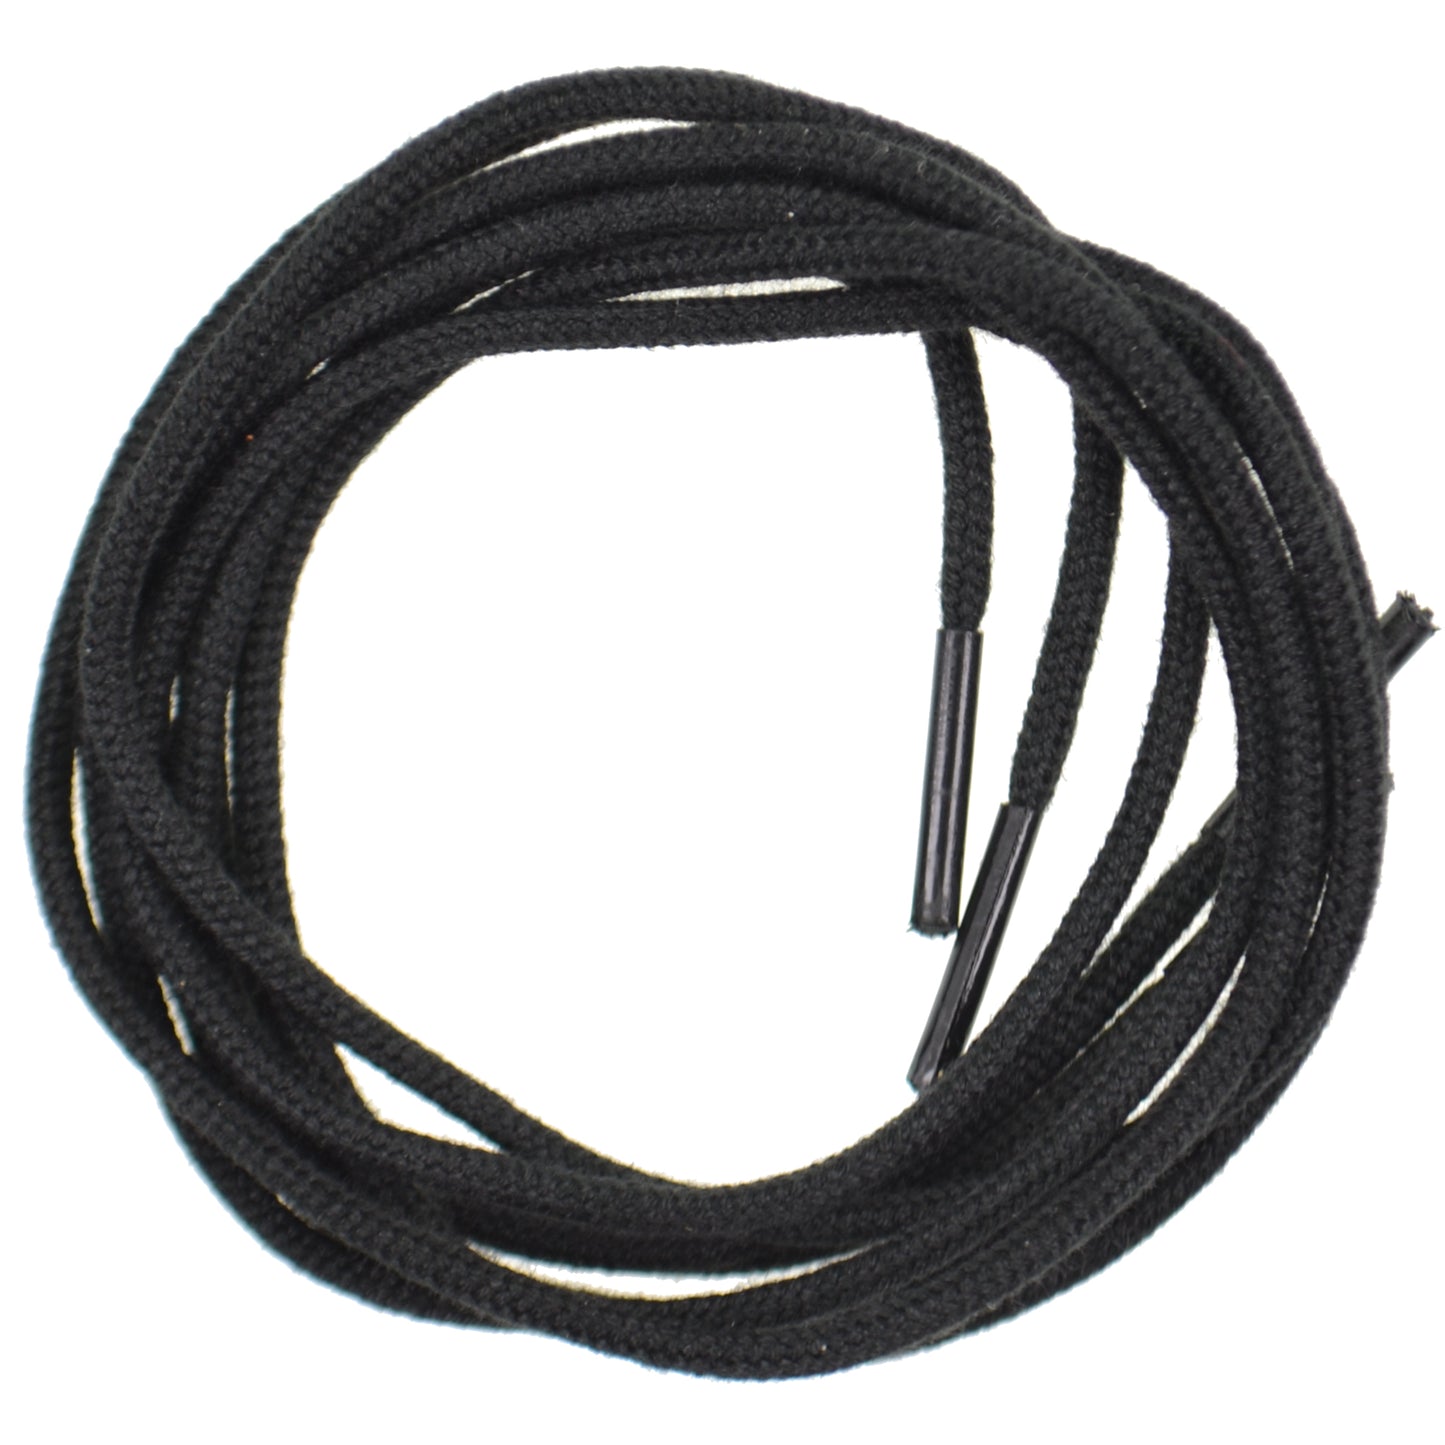 75cm Round Shoe Laces - Black (102)